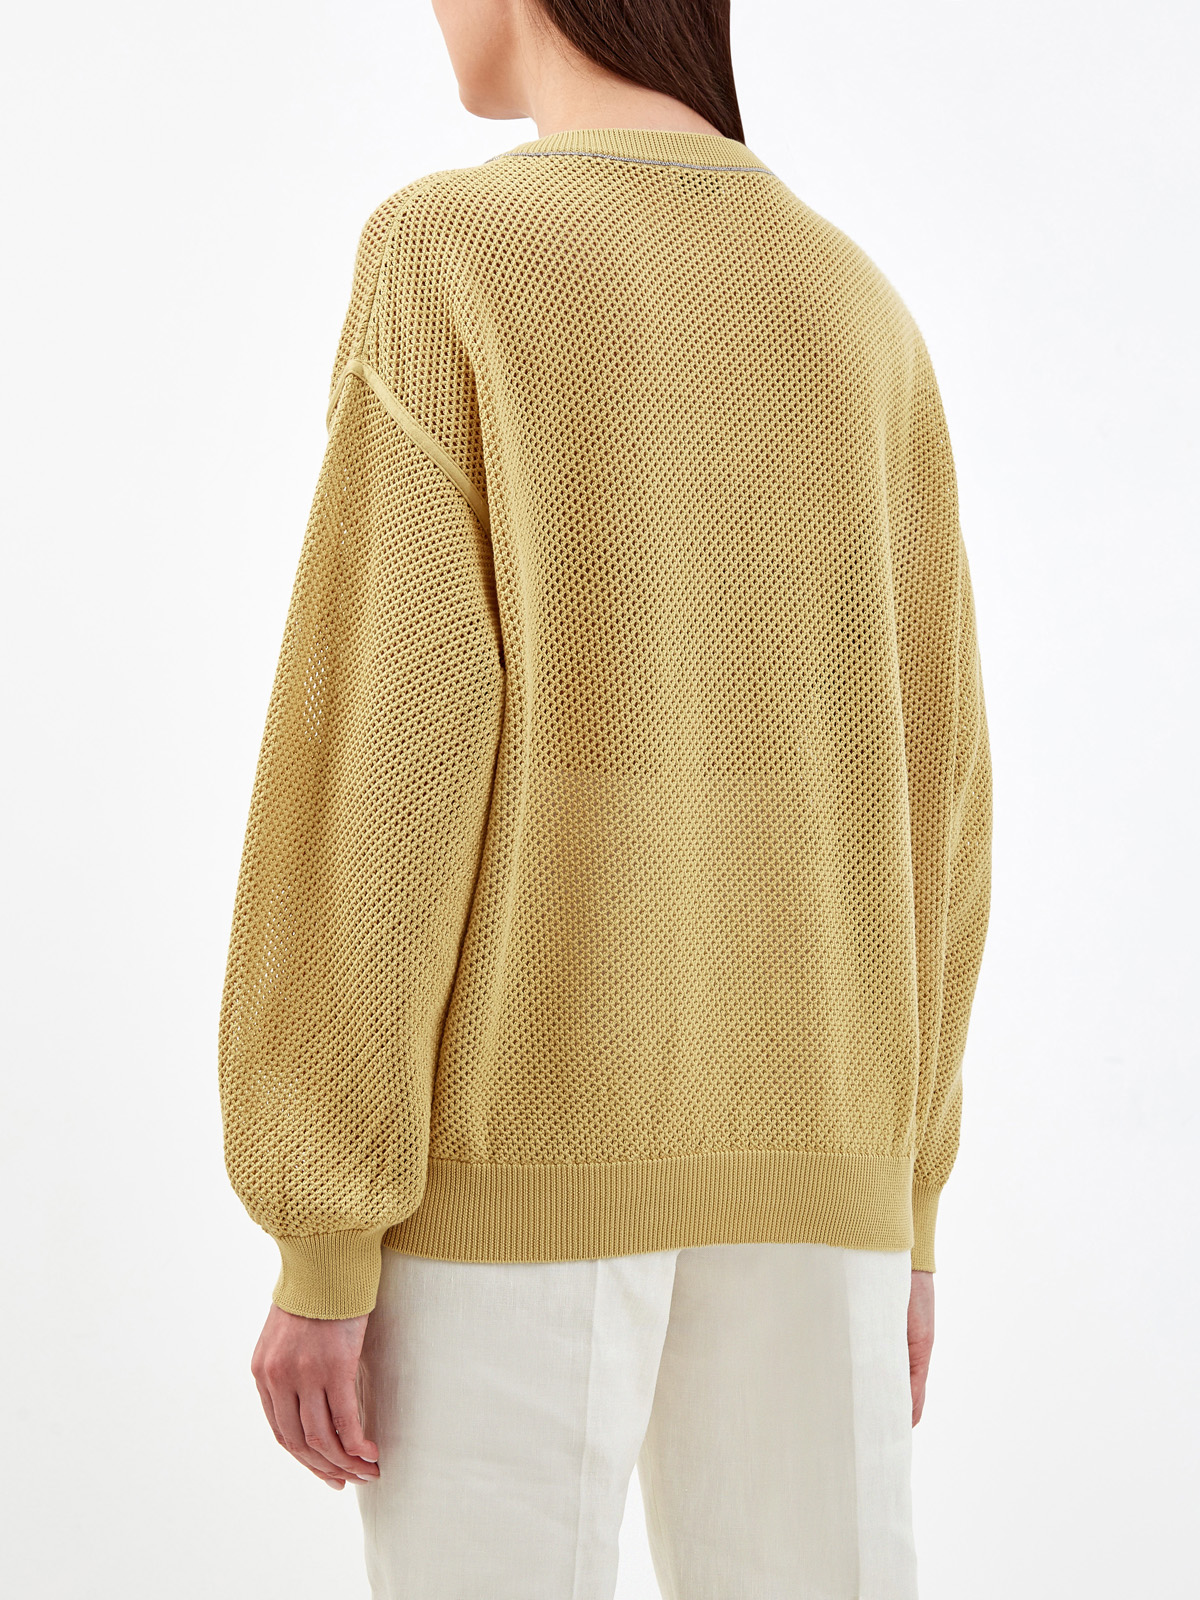 Пуловер из хлопковой пряжи узорной вязки с ювелирной цепочкой Мониль BRUNELLO CUCINELLI, цвет желтый, размер 44;42 - фото 4